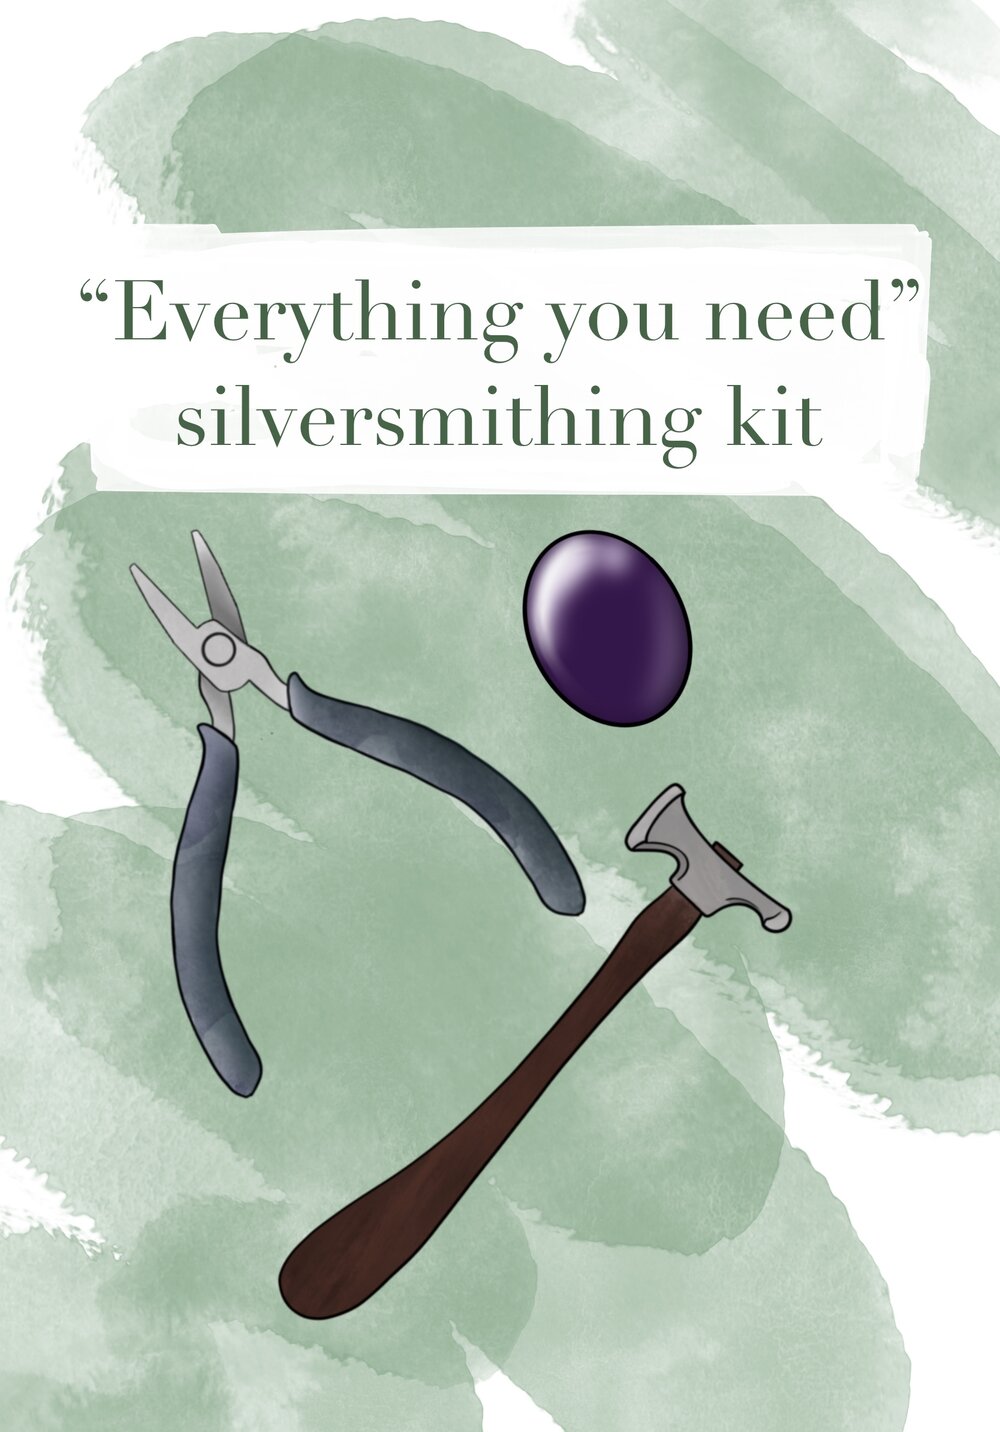 Silversmithing Tool Kit